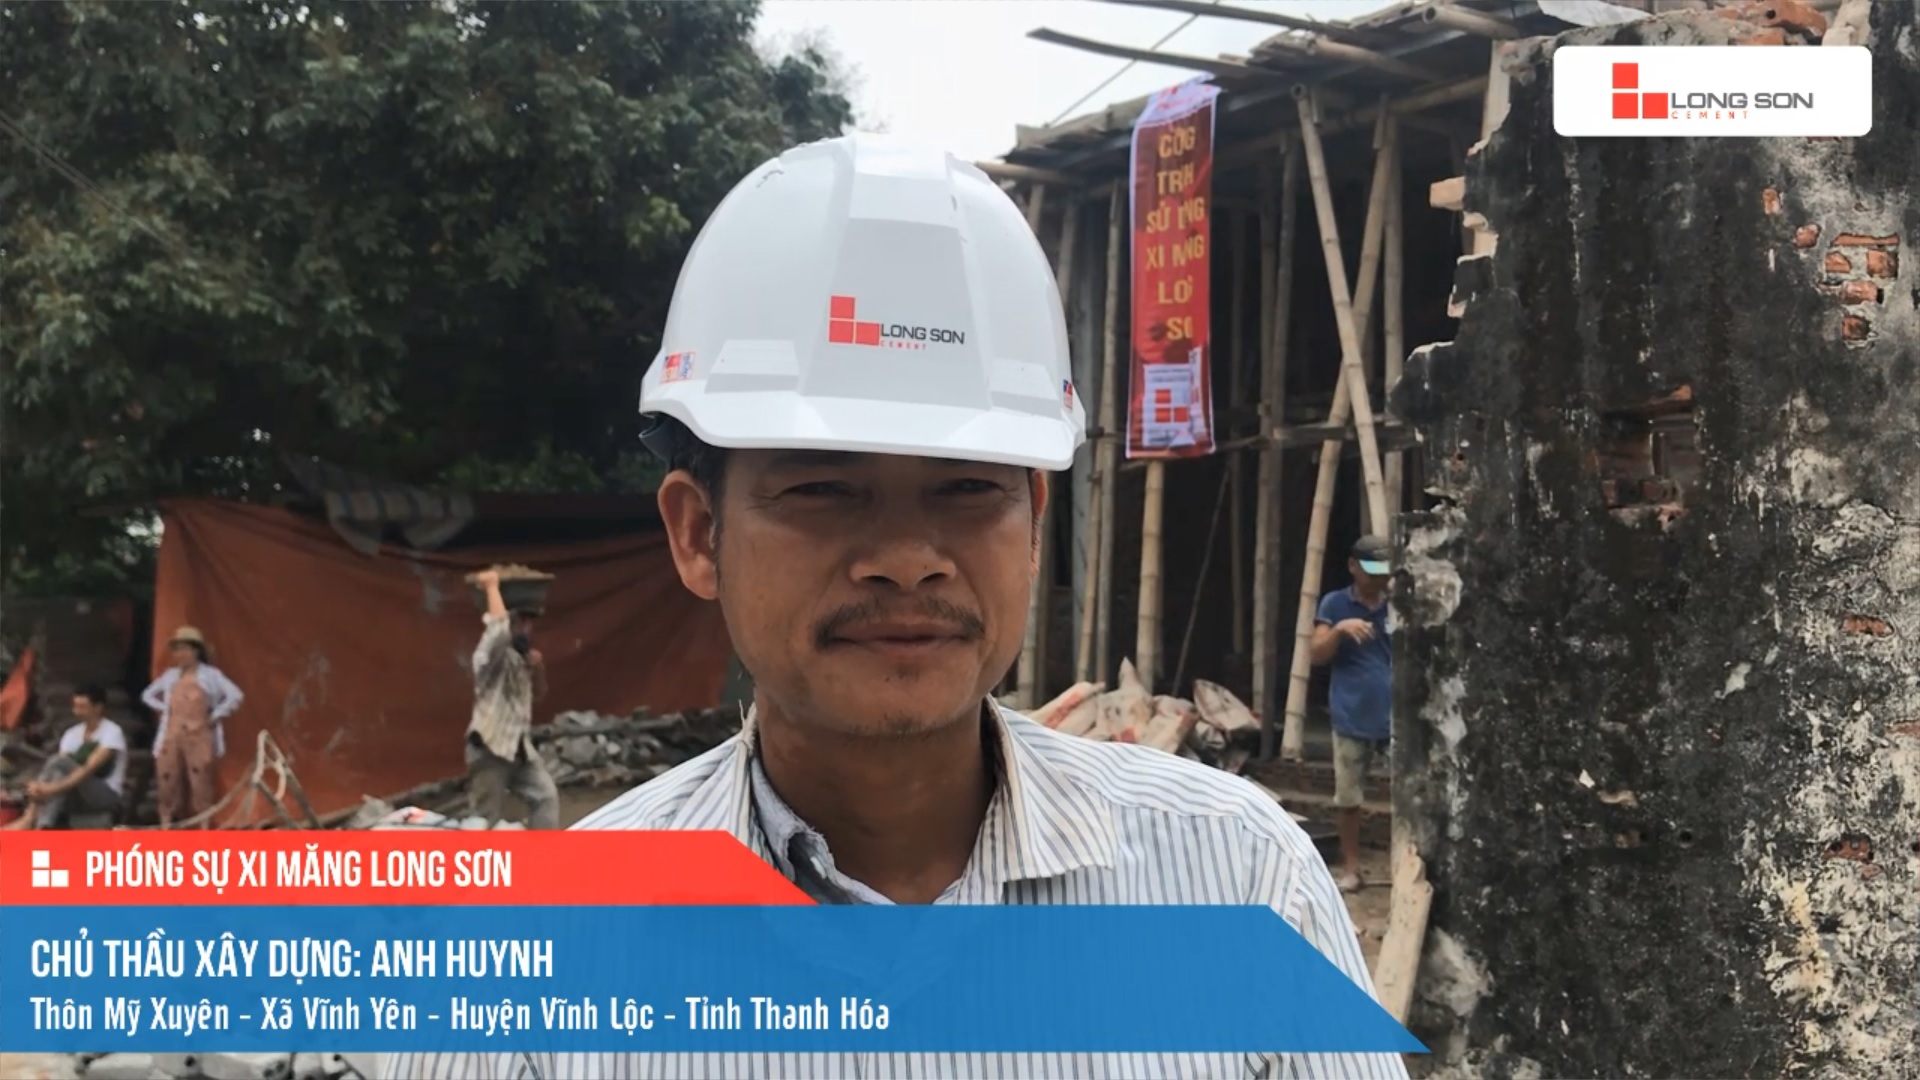 Phóng sự công trình sử dụng Xi măng Long Sơn tại Thanh Hóa 19.04.2021